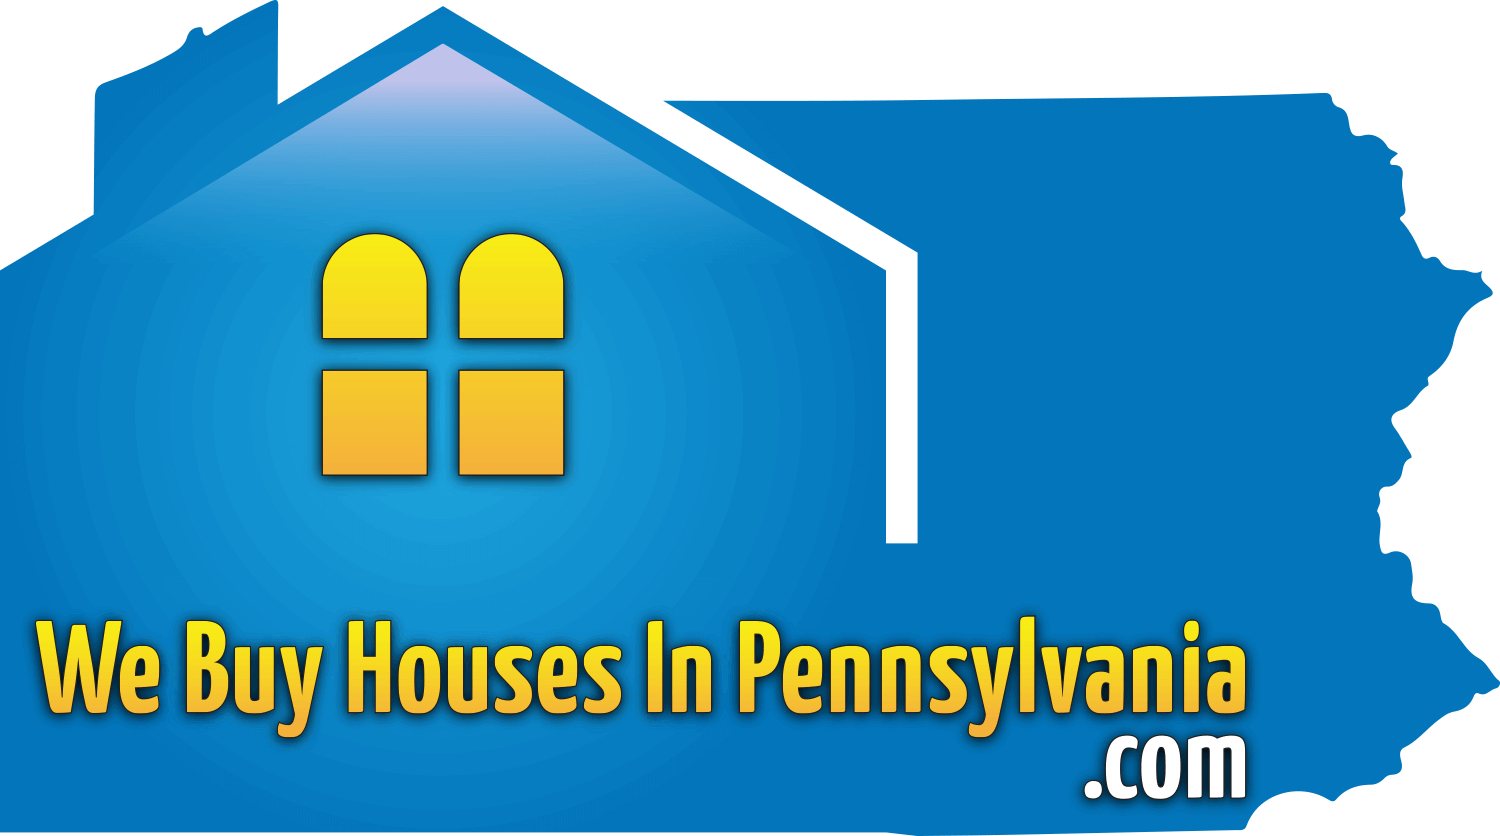 We Buy Houses In Pennsylvania logo